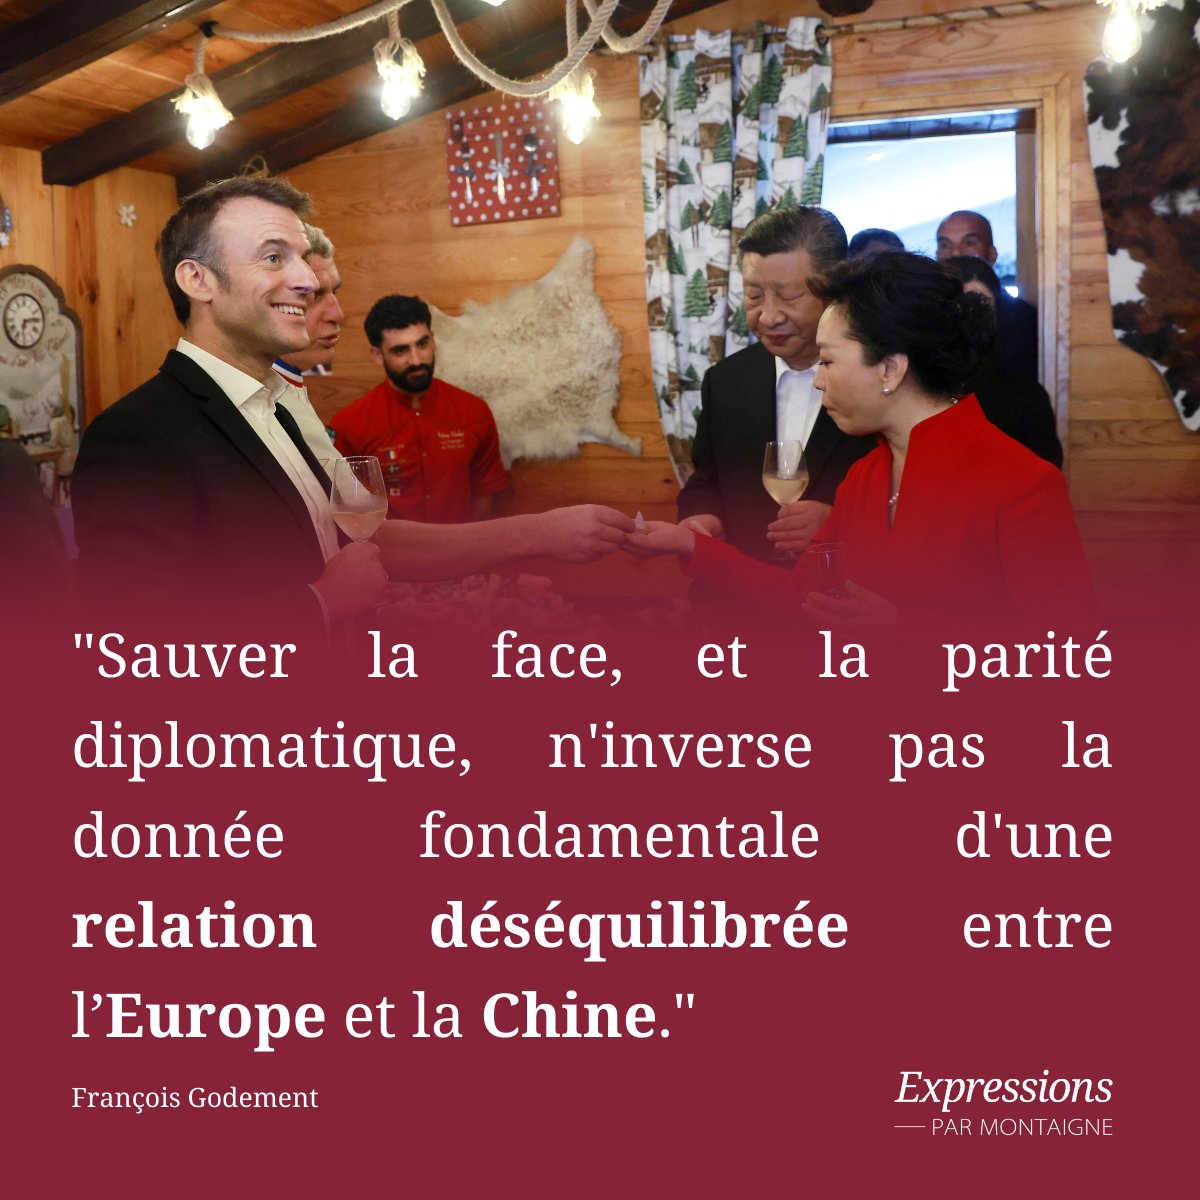 🇨🇳🇫🇷 Bilan de la visite de Xi Jinping : comment a été comprise la 'position d’équilibre française' ? Comment analyser la vision stratégique qu’Emmanuel Macron développe pour les relations entre la France et la Chine ? Analyse de @FGodement 👉 bit.ly/3V0alij